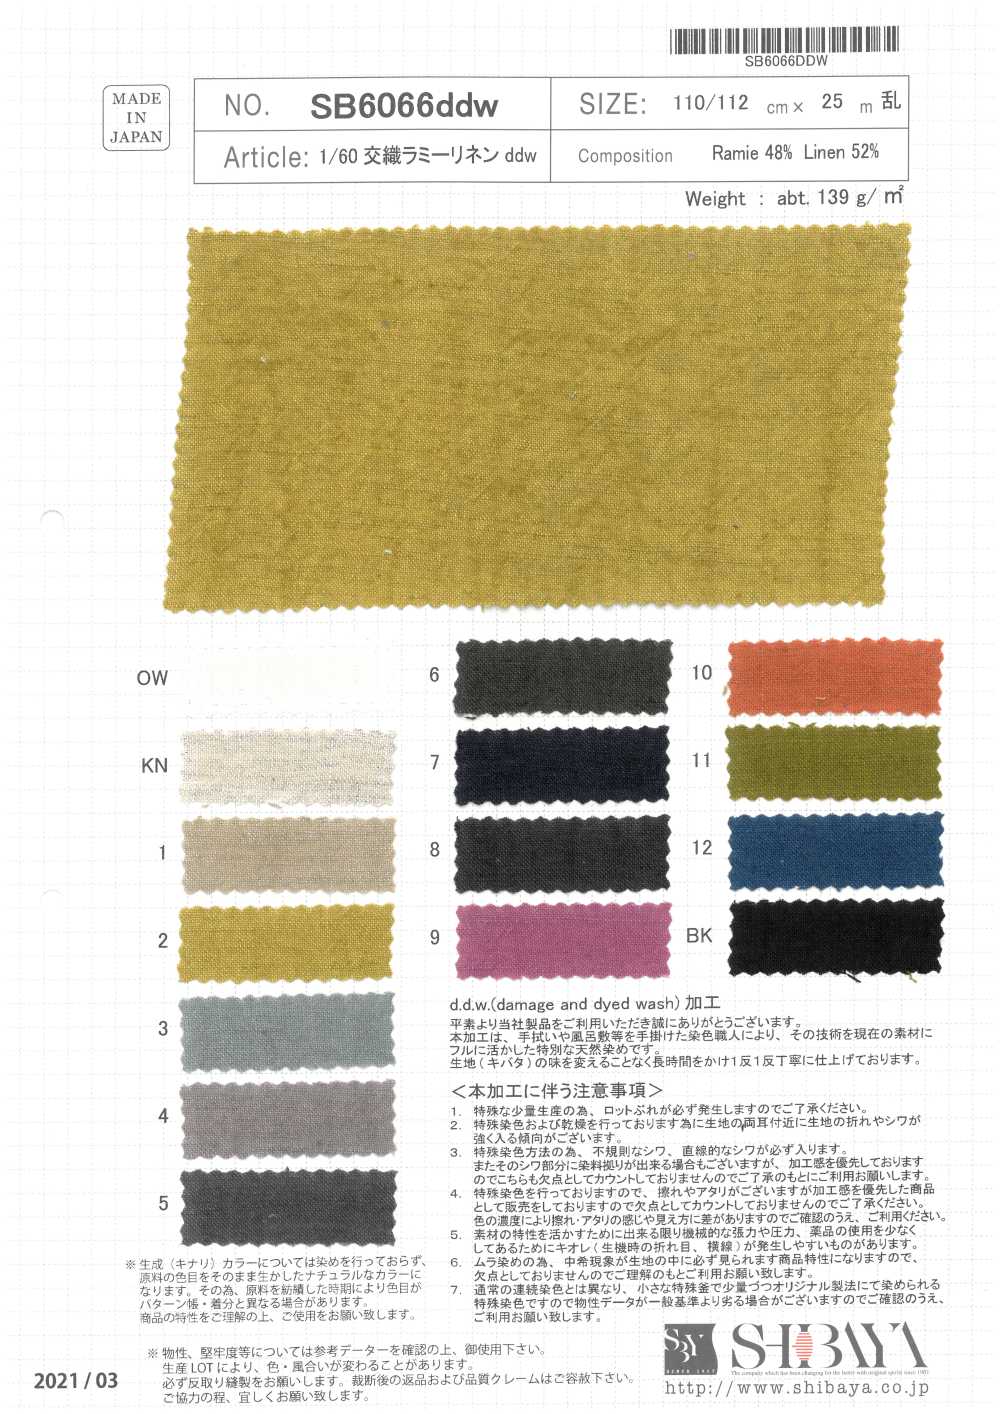 SB6066ddw 1/60 Mixed Weave Ramie Linen Ddw[Textile / Fabric] SHIBAYA